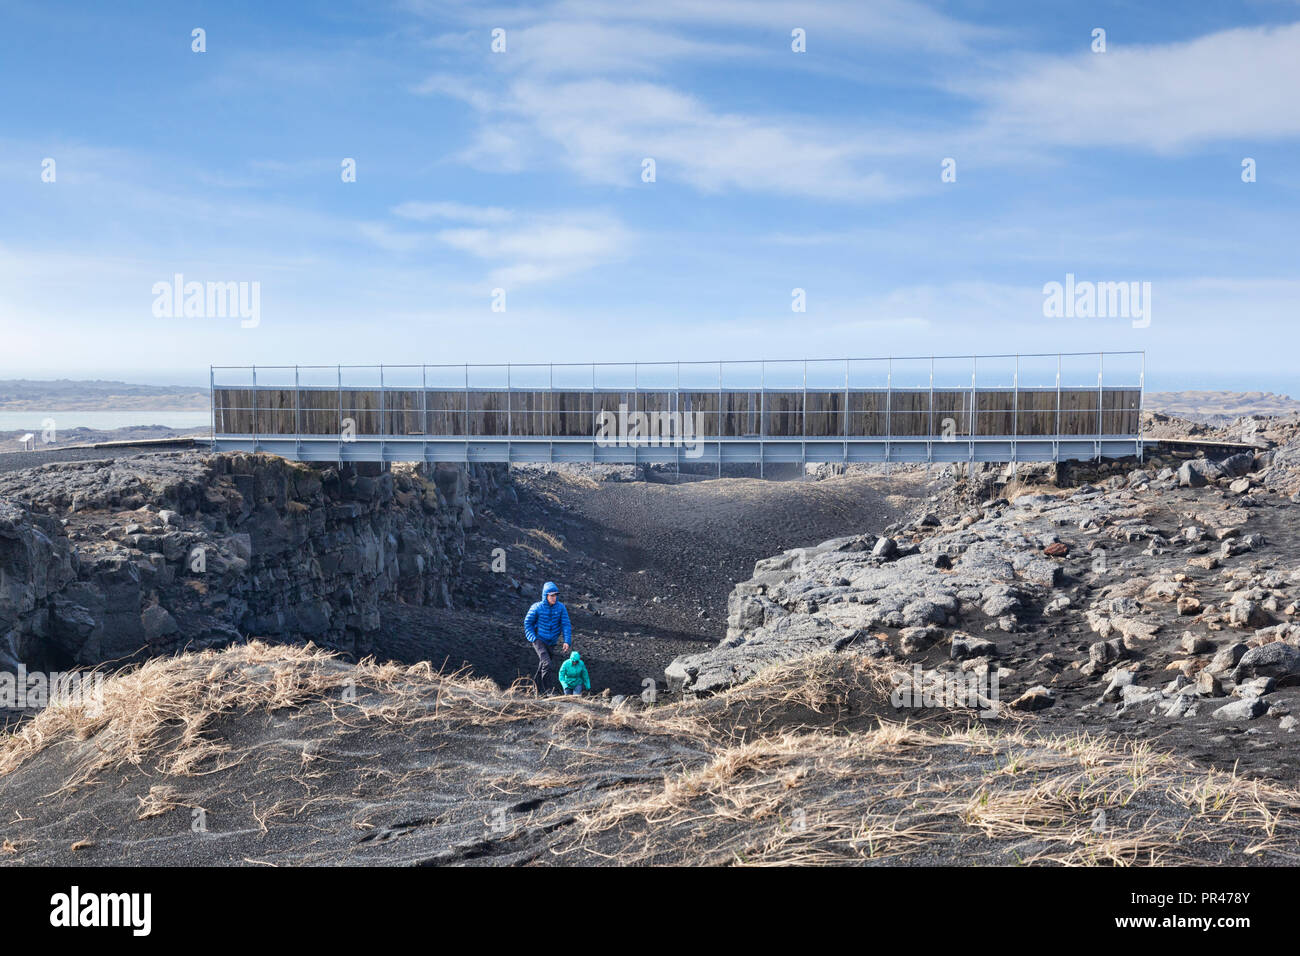 18 Aprile 2018: Sandvik, Islanda - un giovane emergente dalla gola al ponte simbolico tra i continenti nella penisola di Reykjanes, Islanda, cros Foto Stock